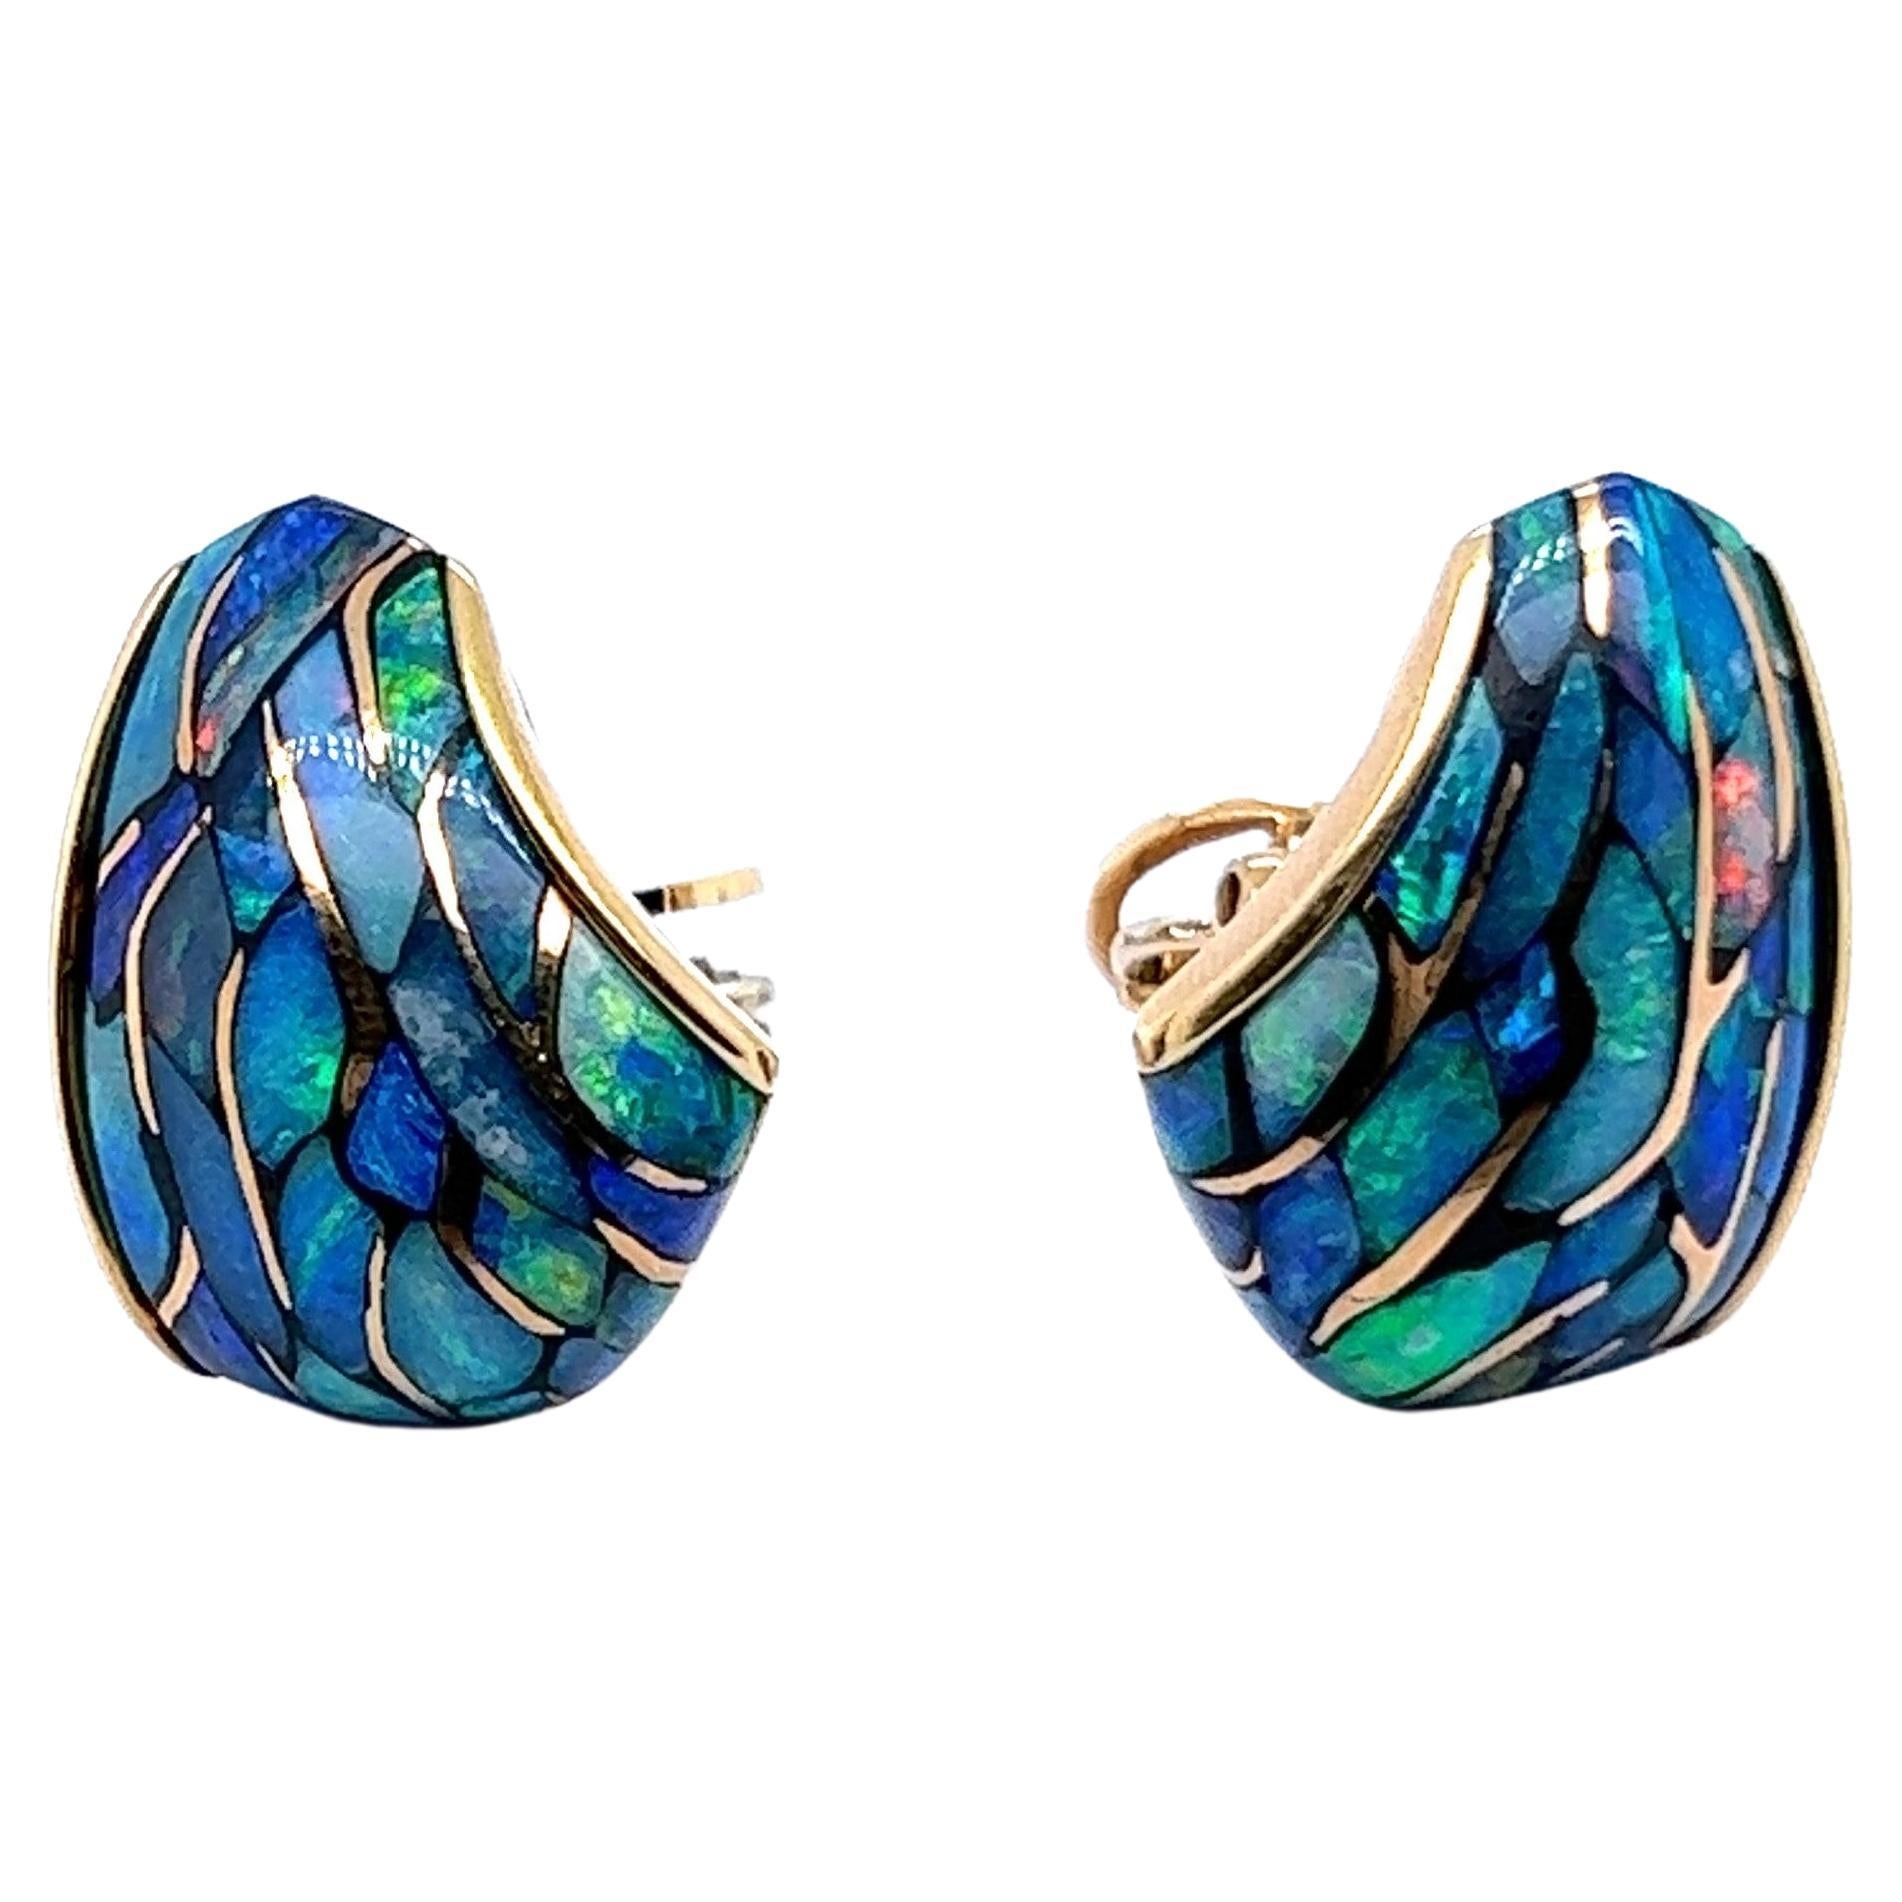 Black Opal Earrings in 18 Karat Rose Gold by Binder For Sale 2